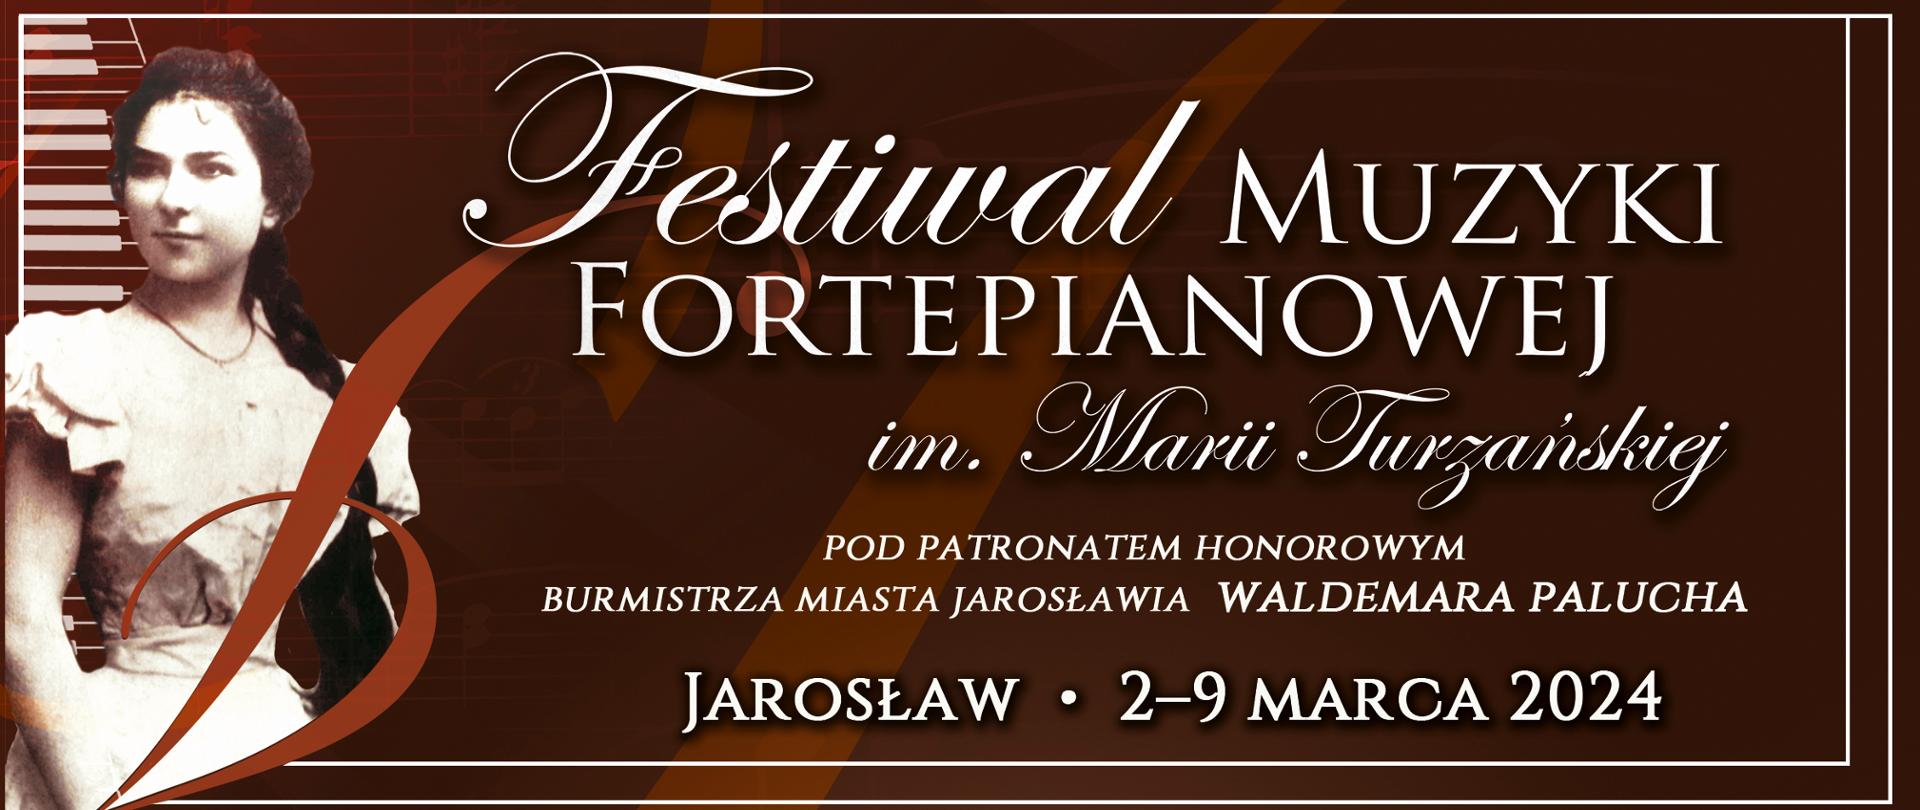 Baner reklamowy na brązowym tle biały napis: Festiwal Muzyki Fortepianowej im. Marii Turzańskiej - Jarosław 2-9 marca 2024, po lewej stronie zdjęcie Marii Turzańskiej 